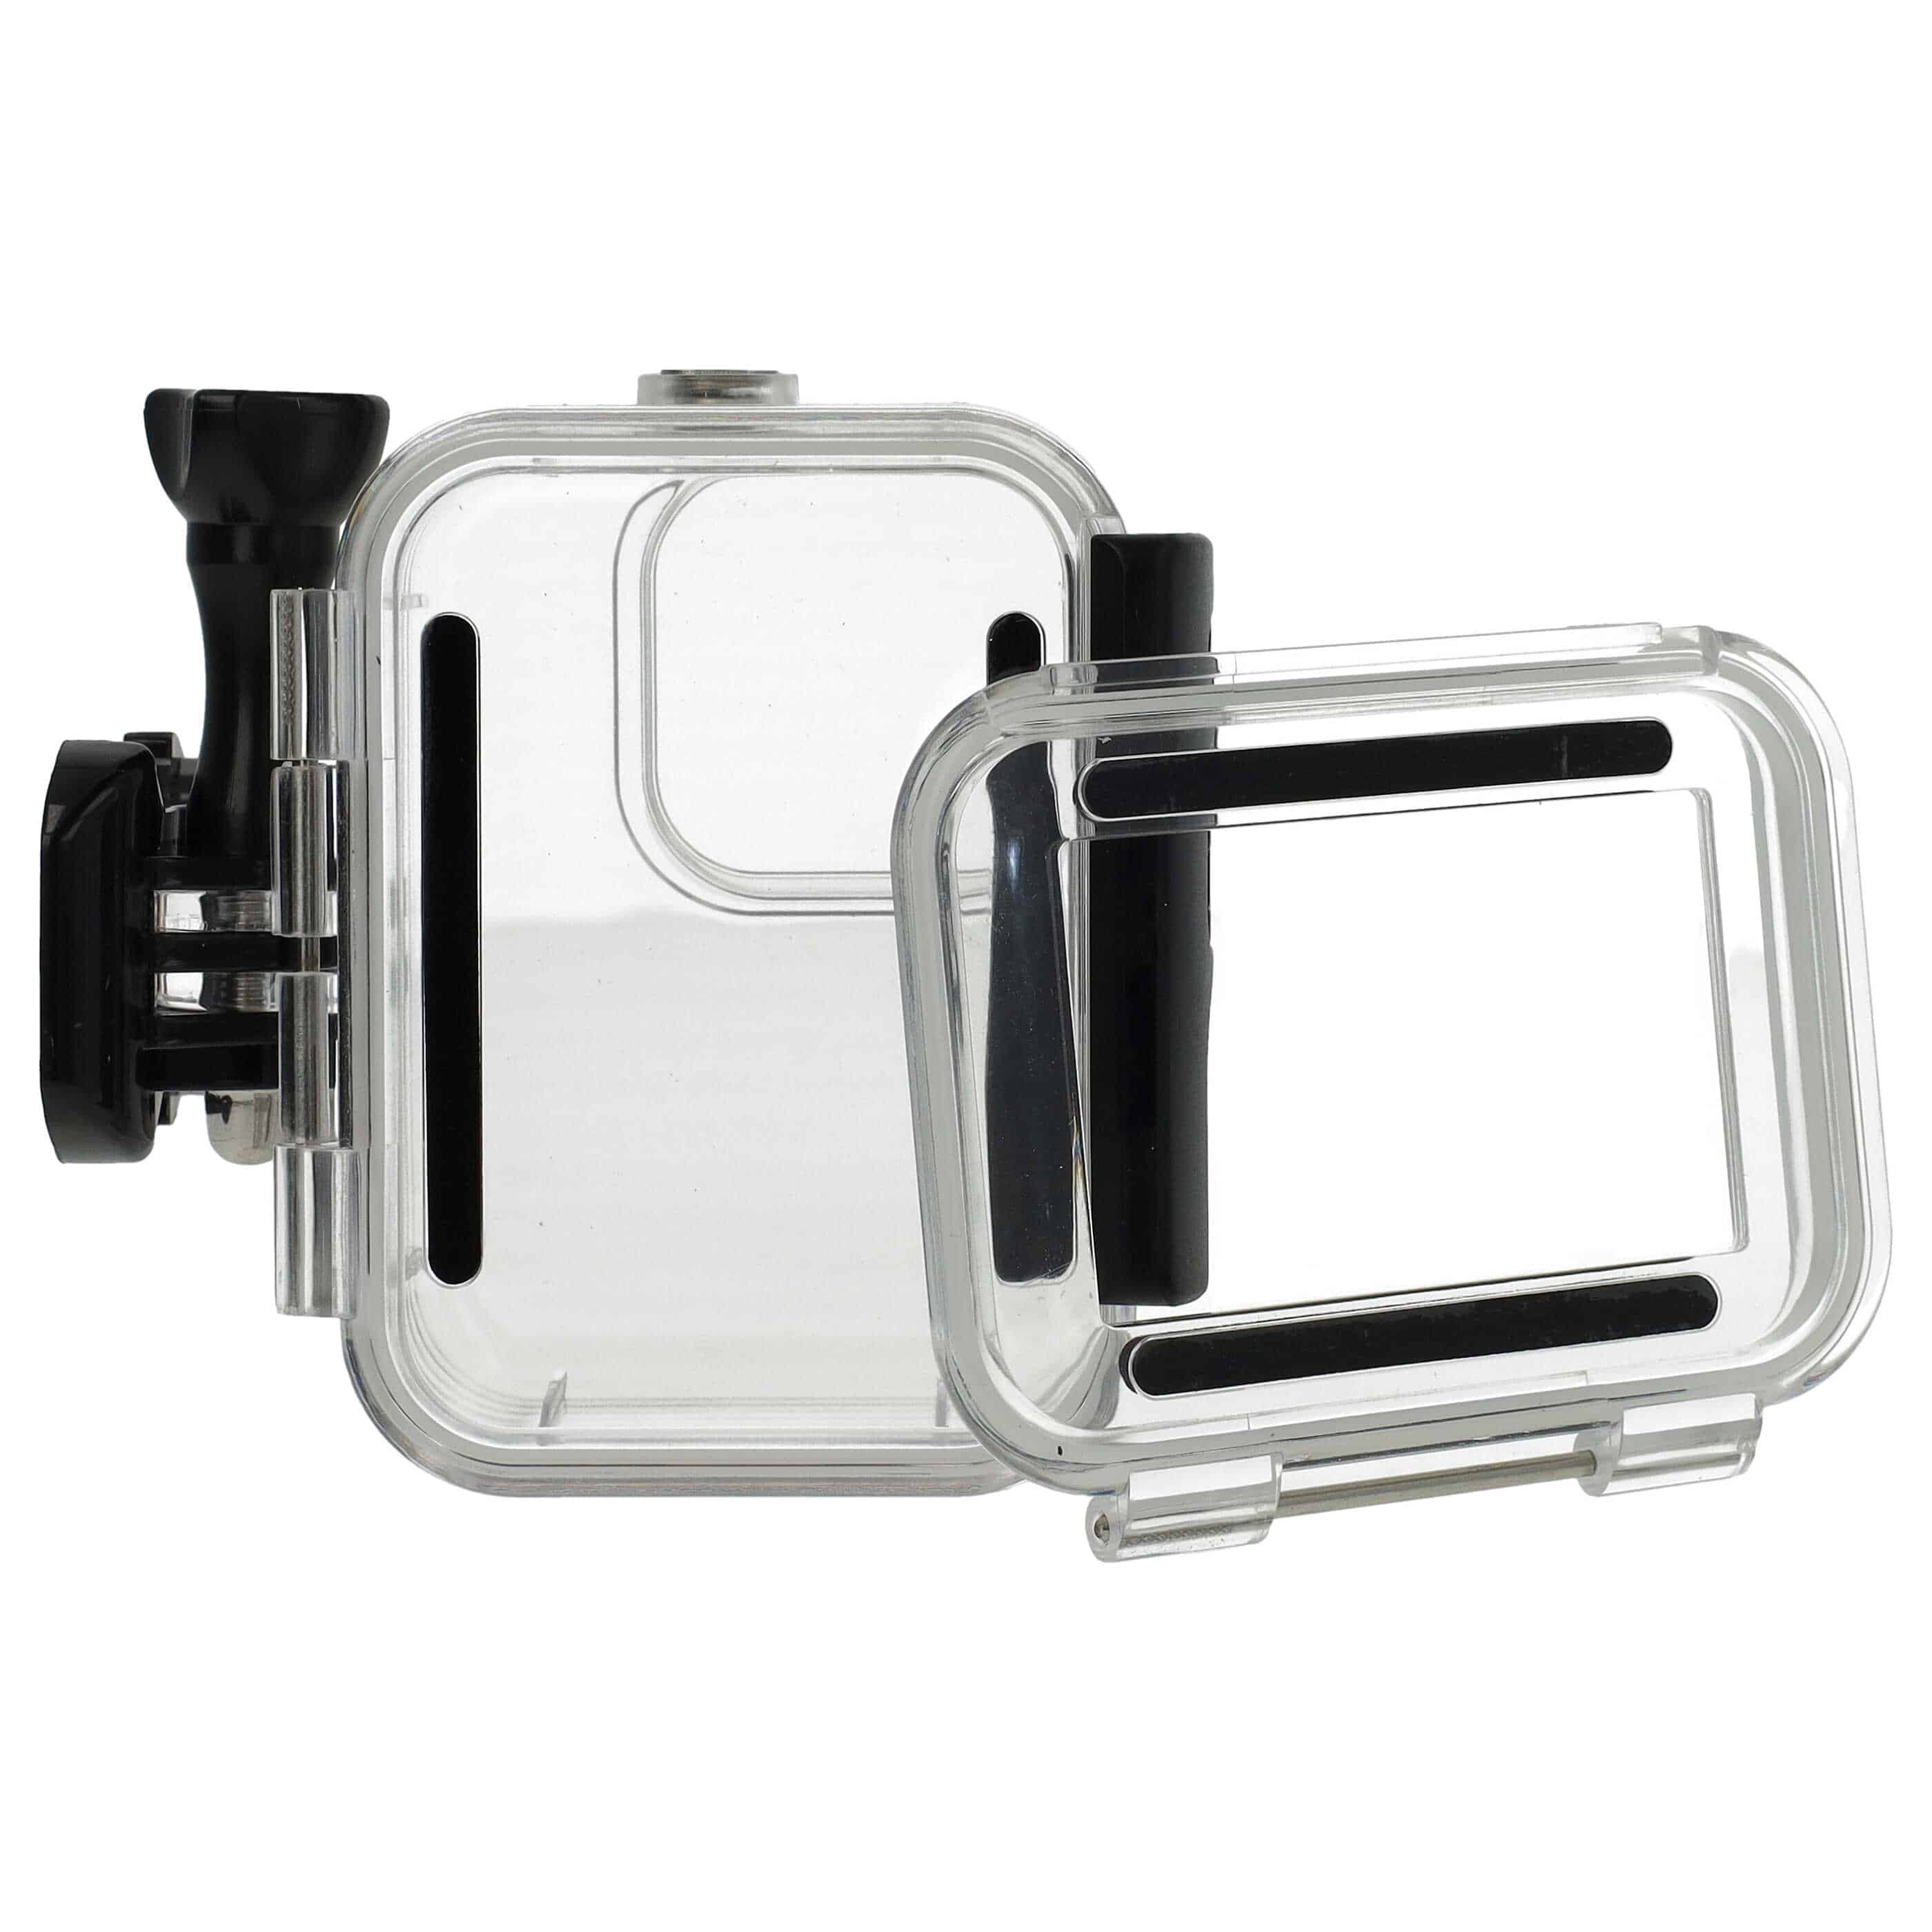 Boîtier étanche pour action cam GoPro Hero 9, 10, 11 - profondeur max. 60 m